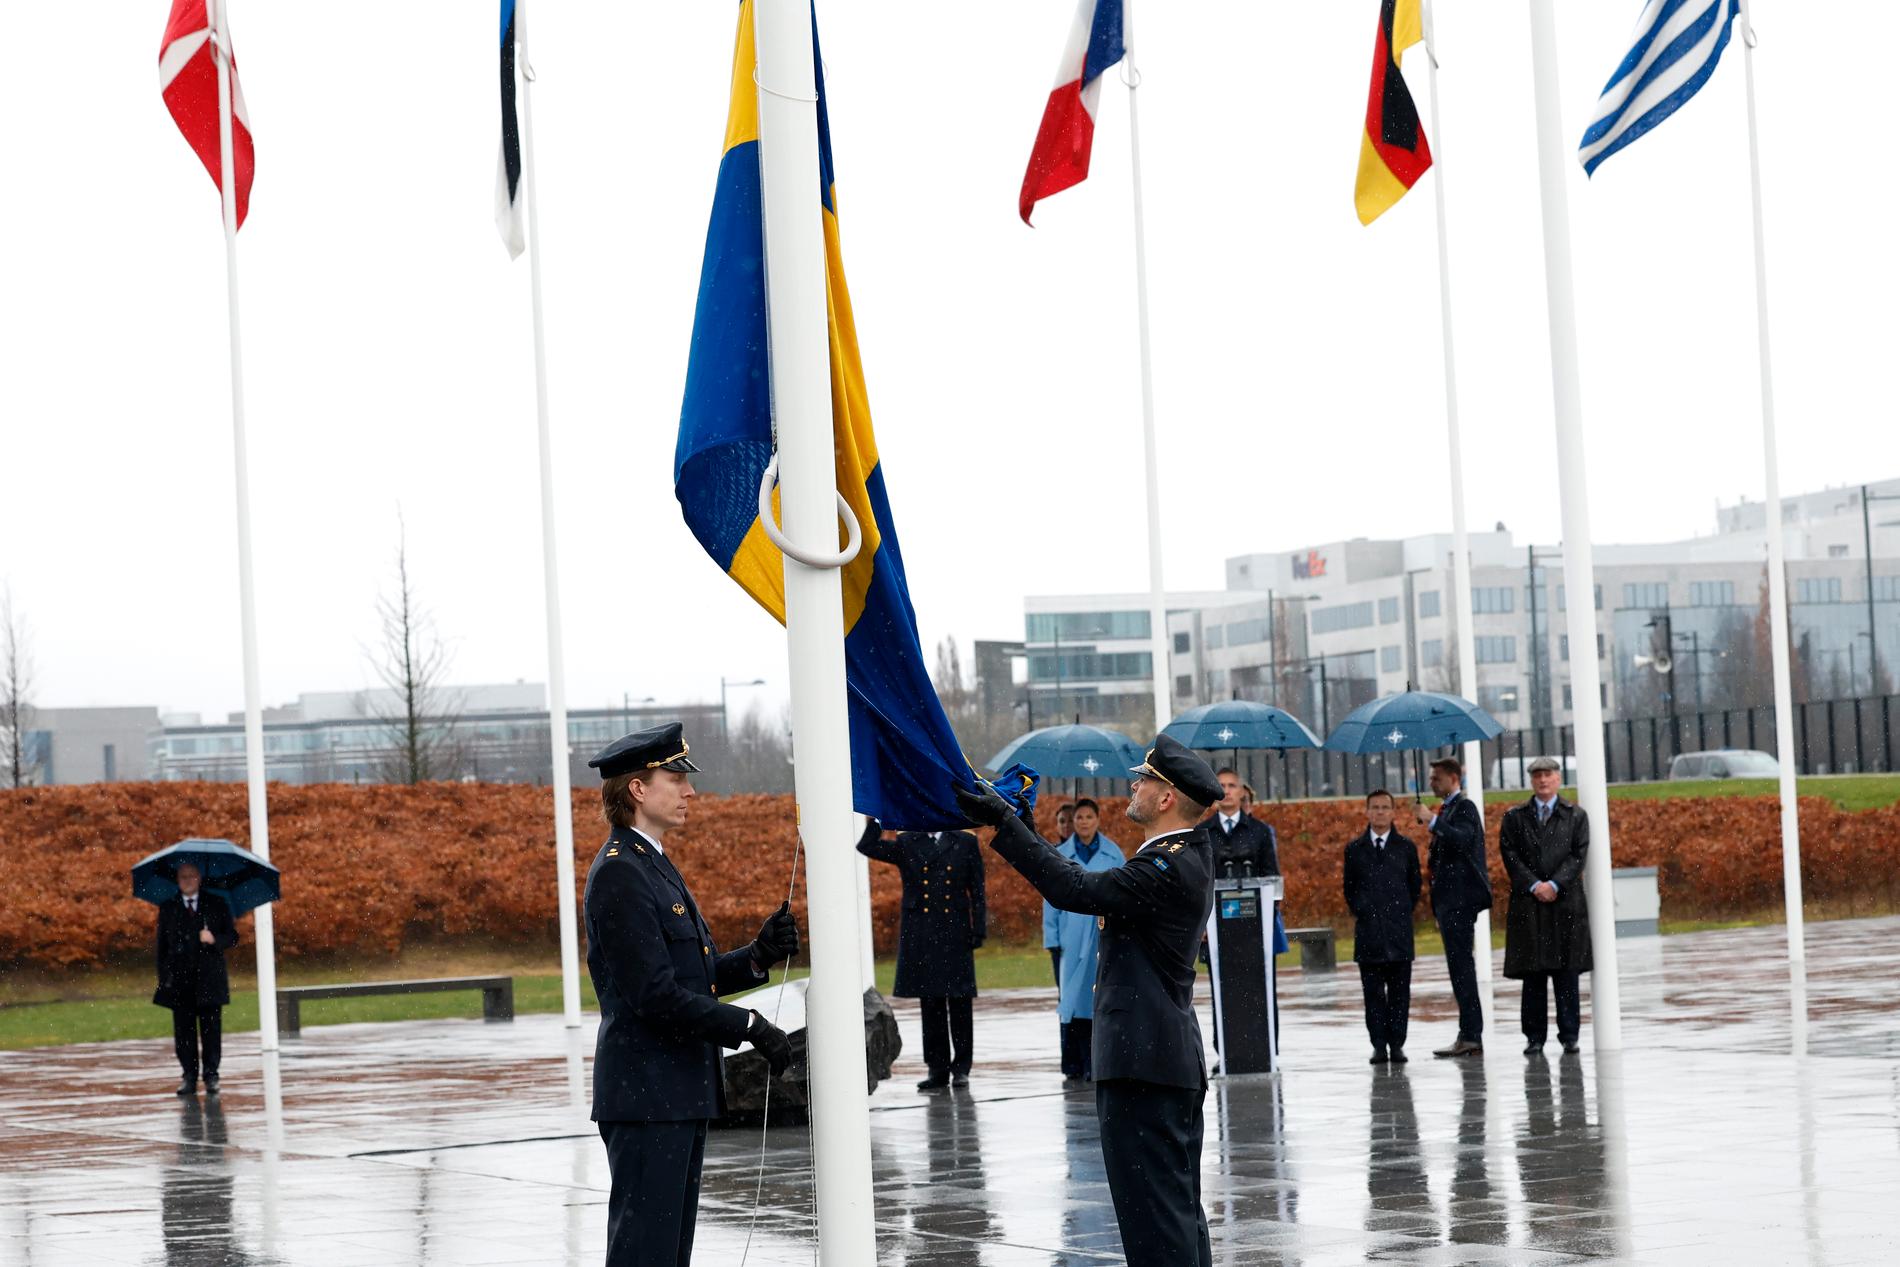 Tio politiker och en kronprinsessa flögs till Bryssel för att titta på när den svenska flaggan hissades utanför Natohögkvarteret.